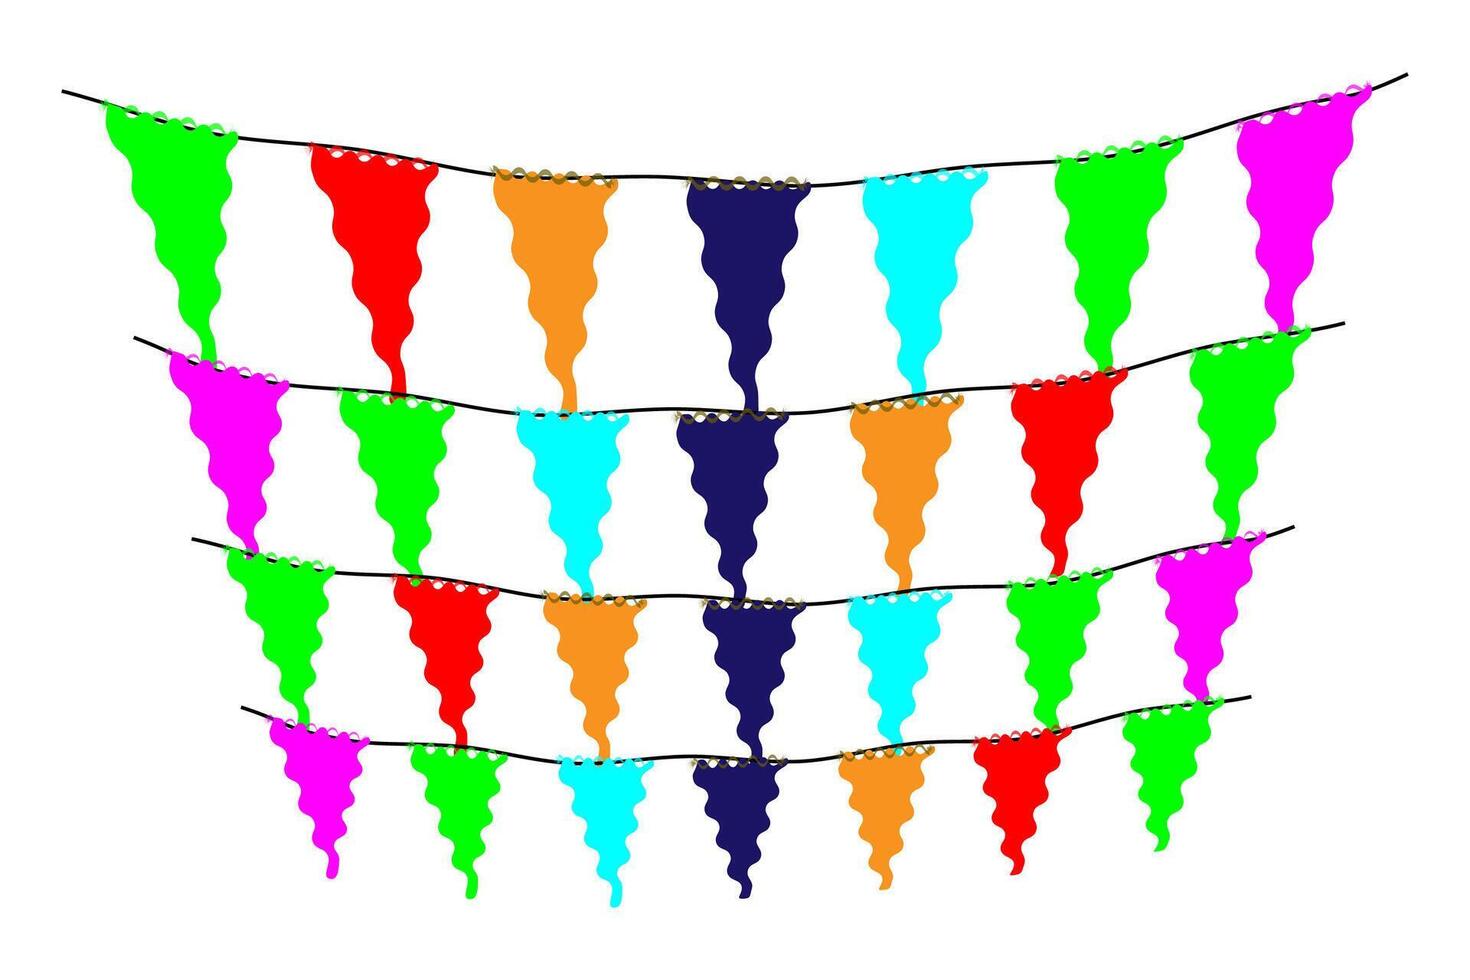 salutation ou fête invitation avec carnaval drapeau guirlandes avec coloré pendaison au-dessus de. vecteur